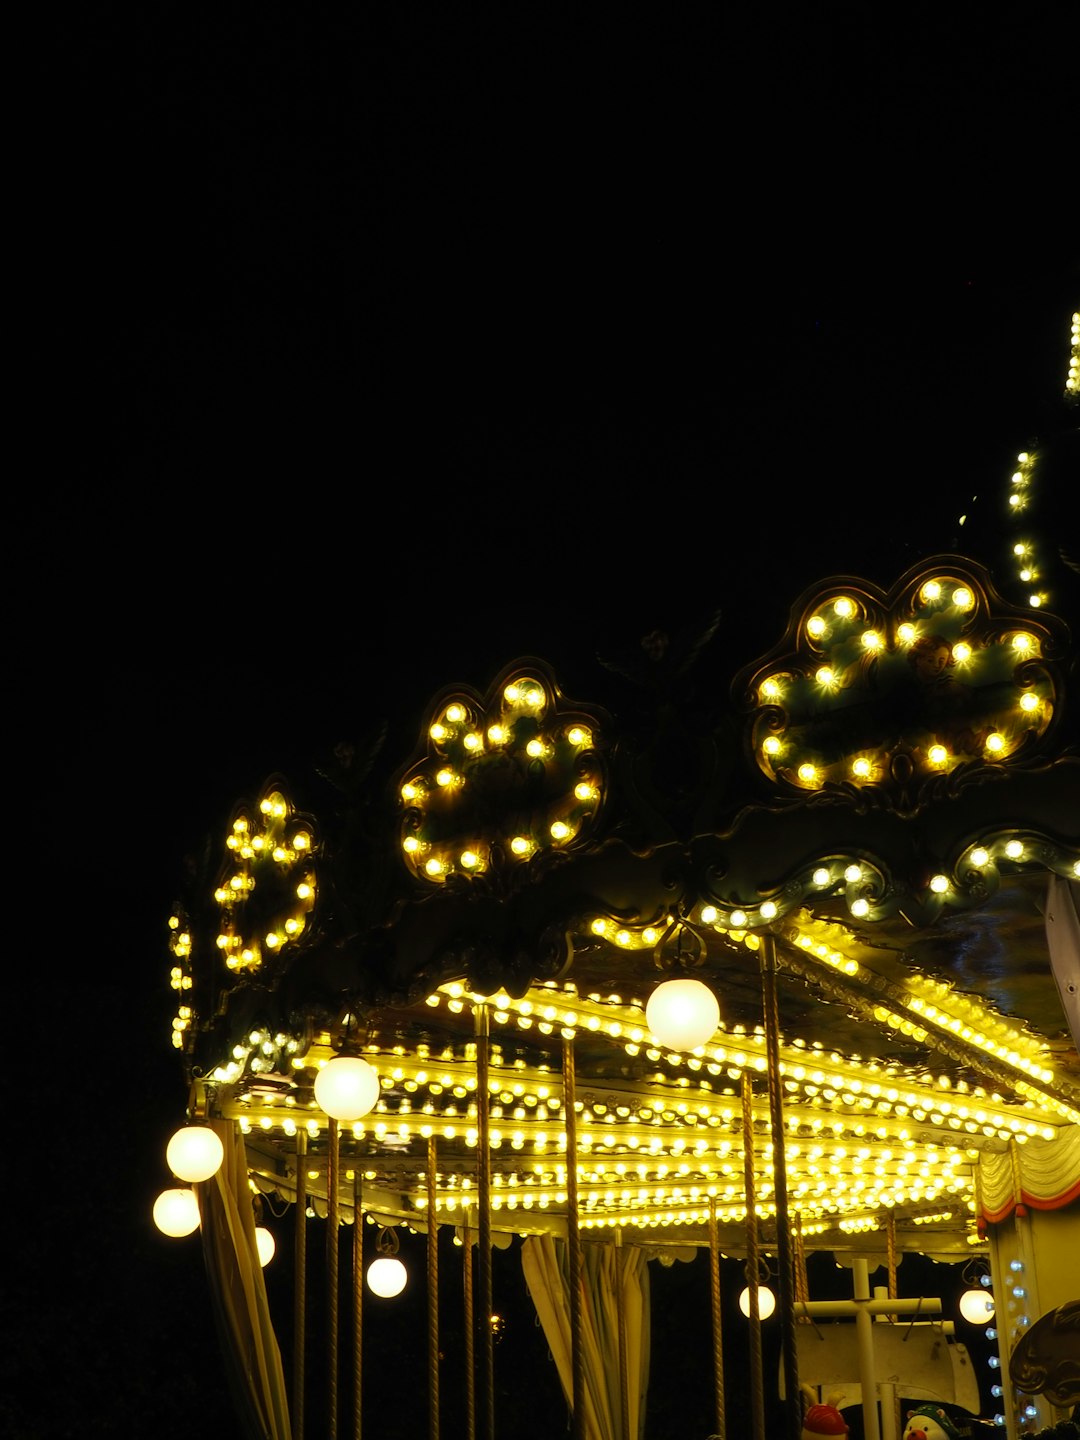 lit carousel at night